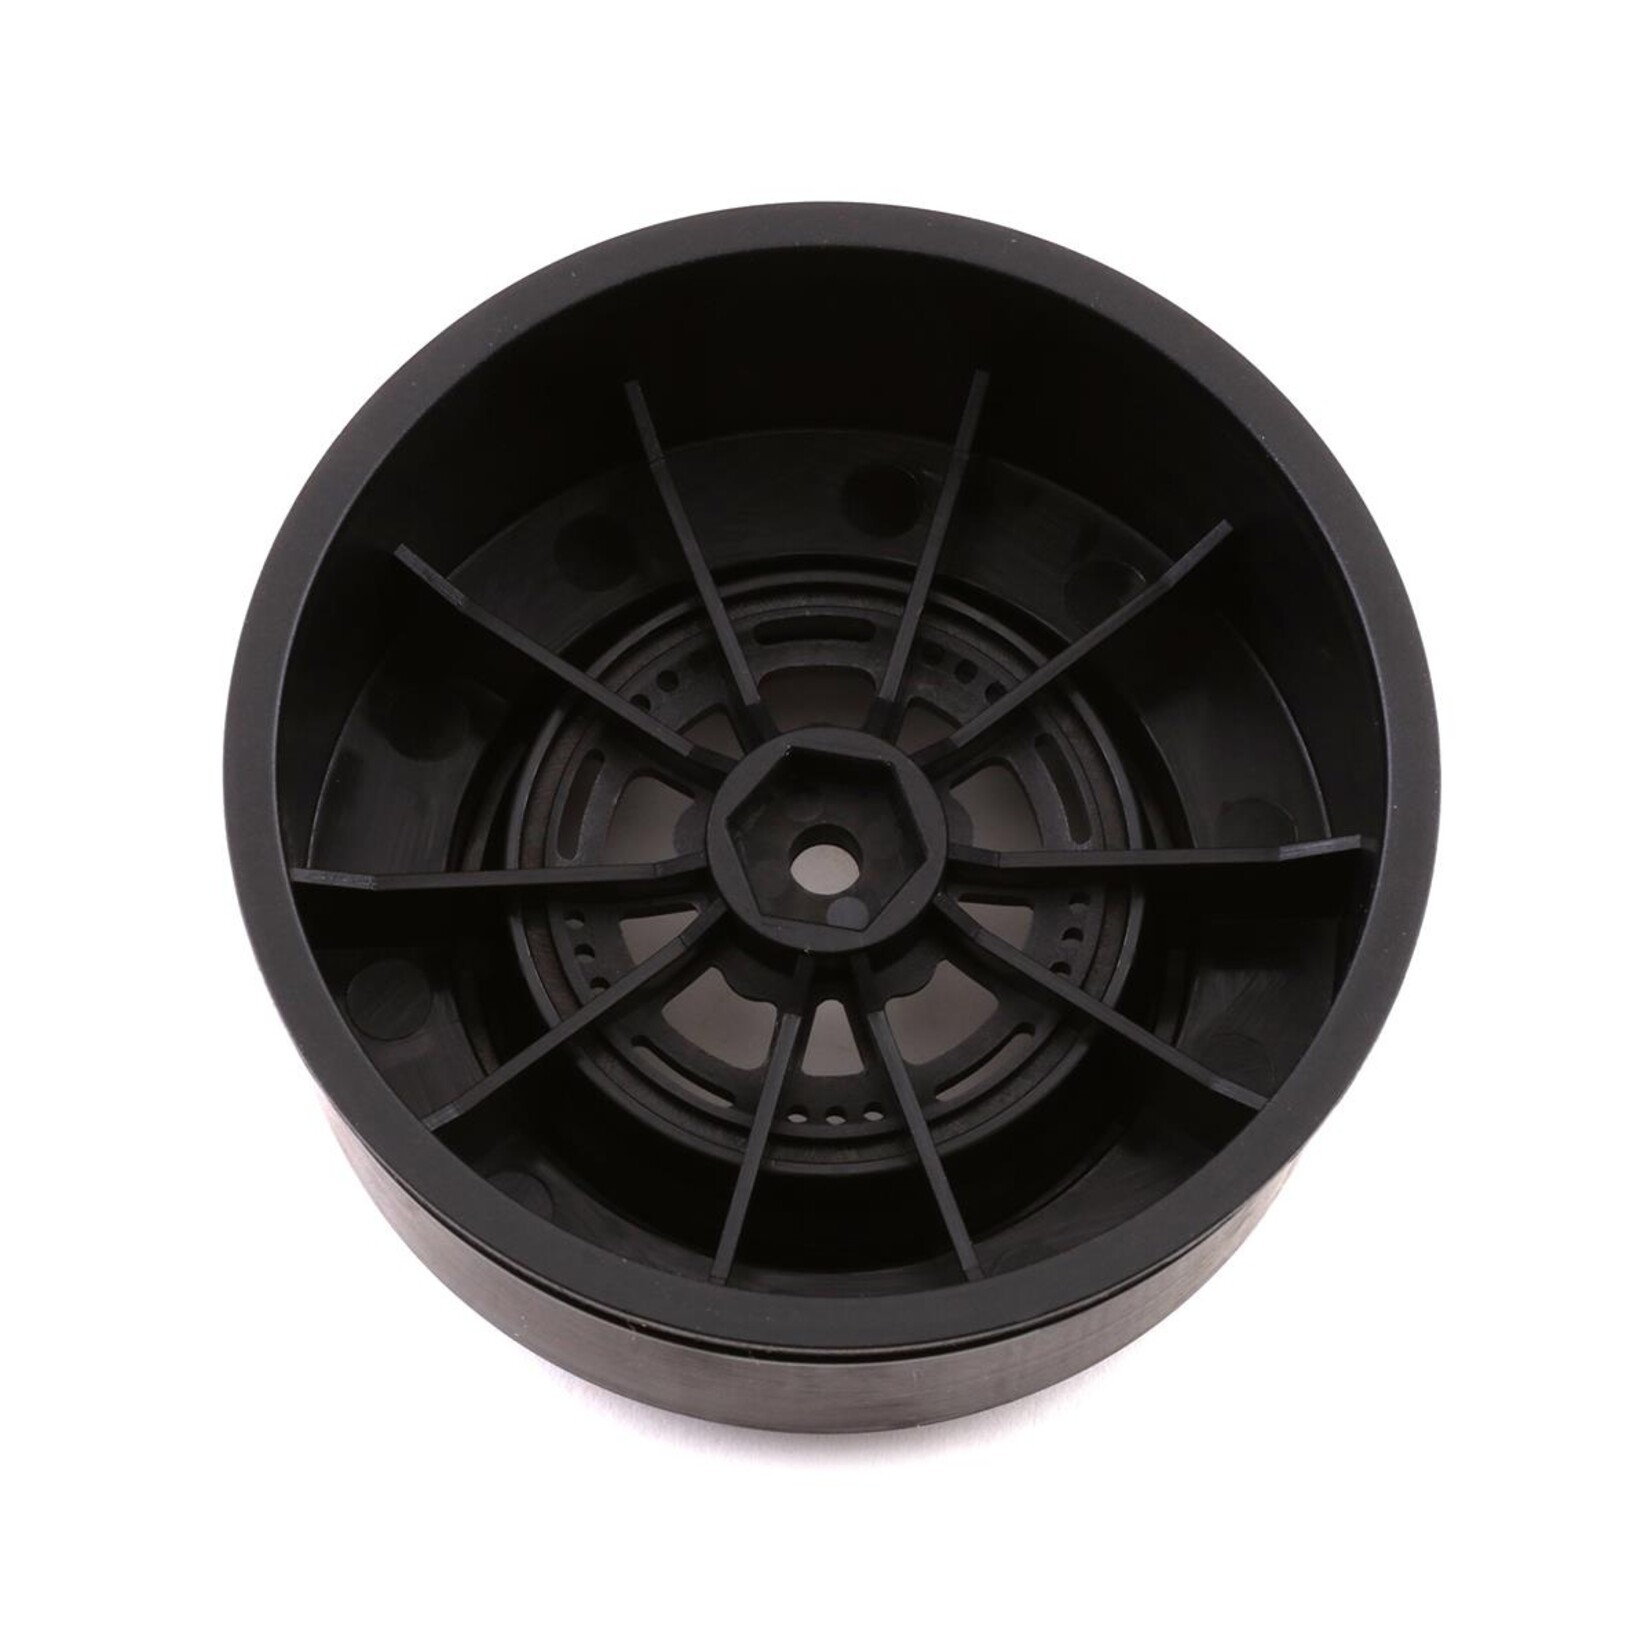 DragRace Concepts DragRace Concepts AXIS 2.2/3.0" Drag Racing Rear Wheels w/12mm Hex (Black) (2) #216